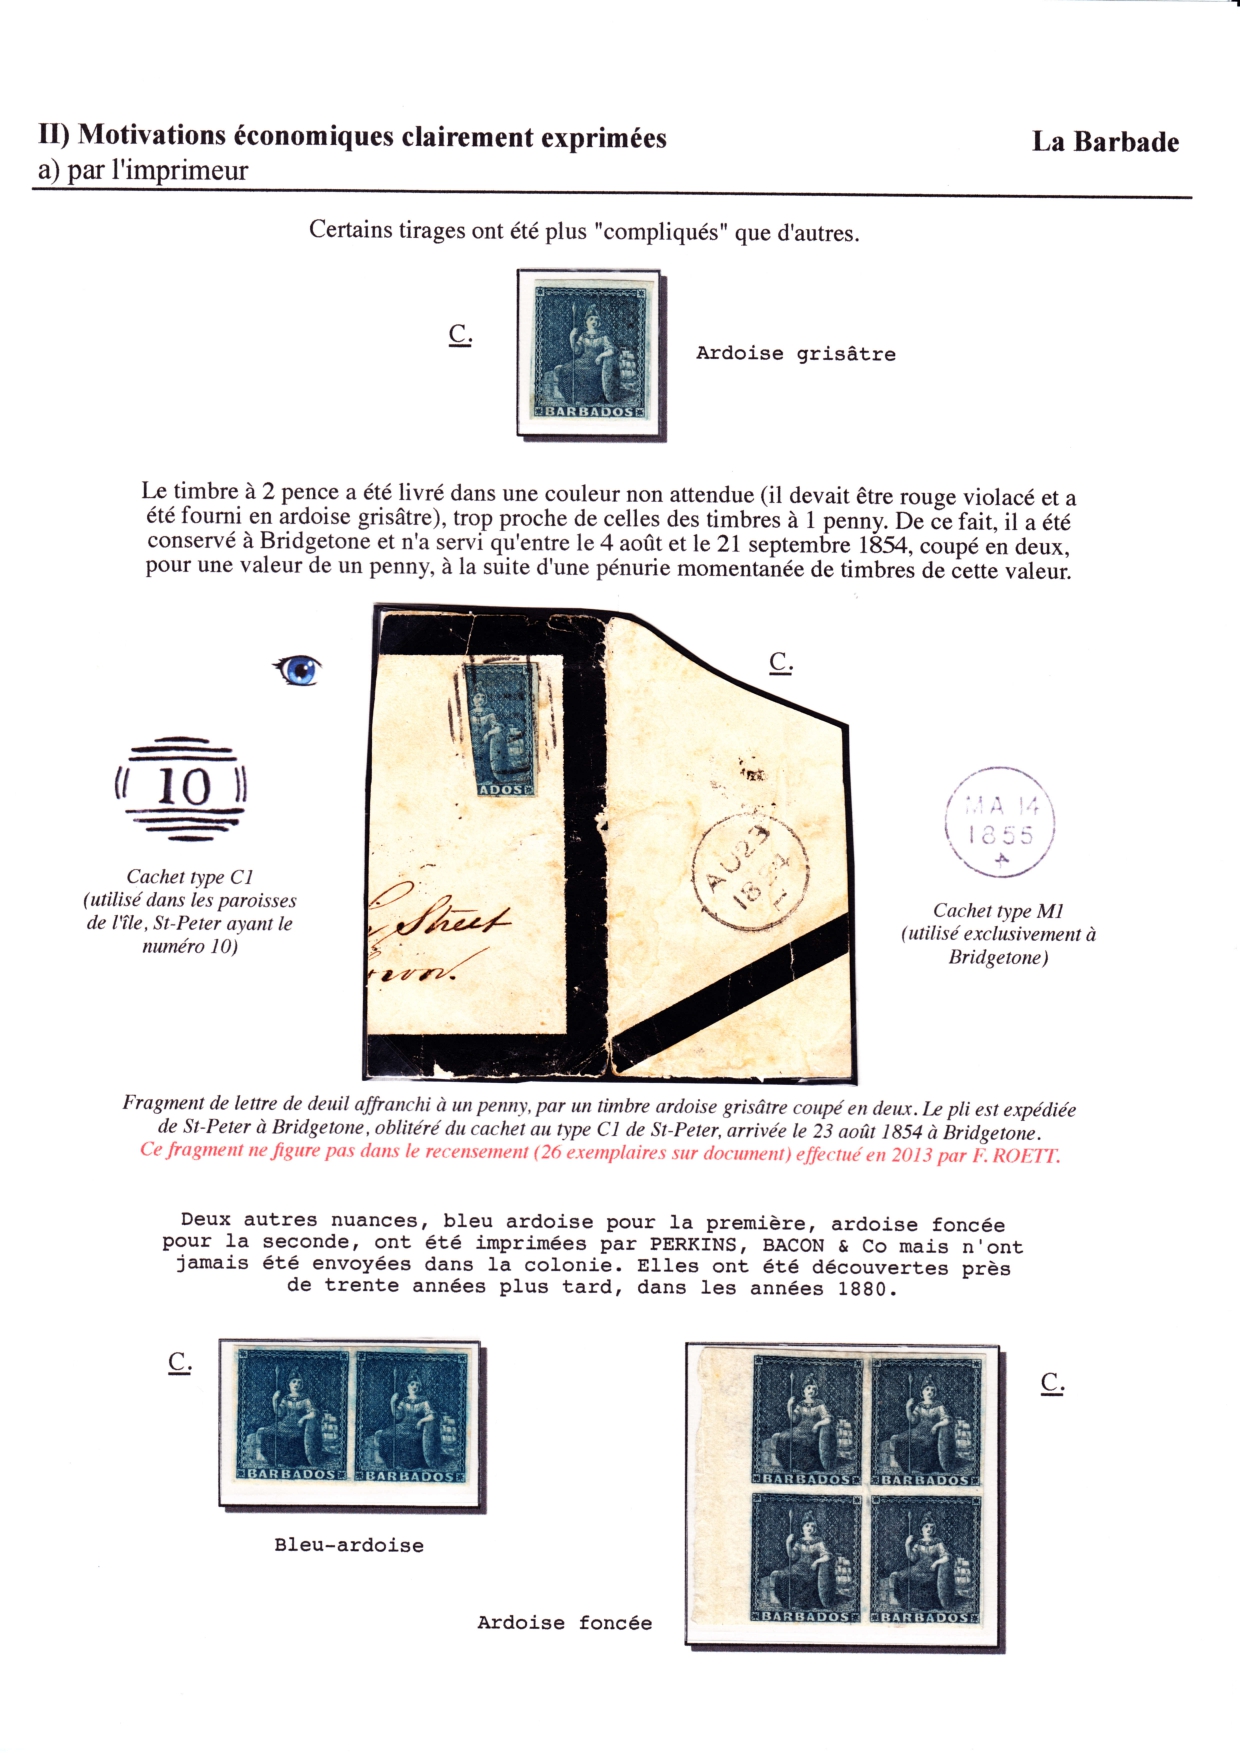 Les d��buts des timbres sans valeur faciale apparente p. 32